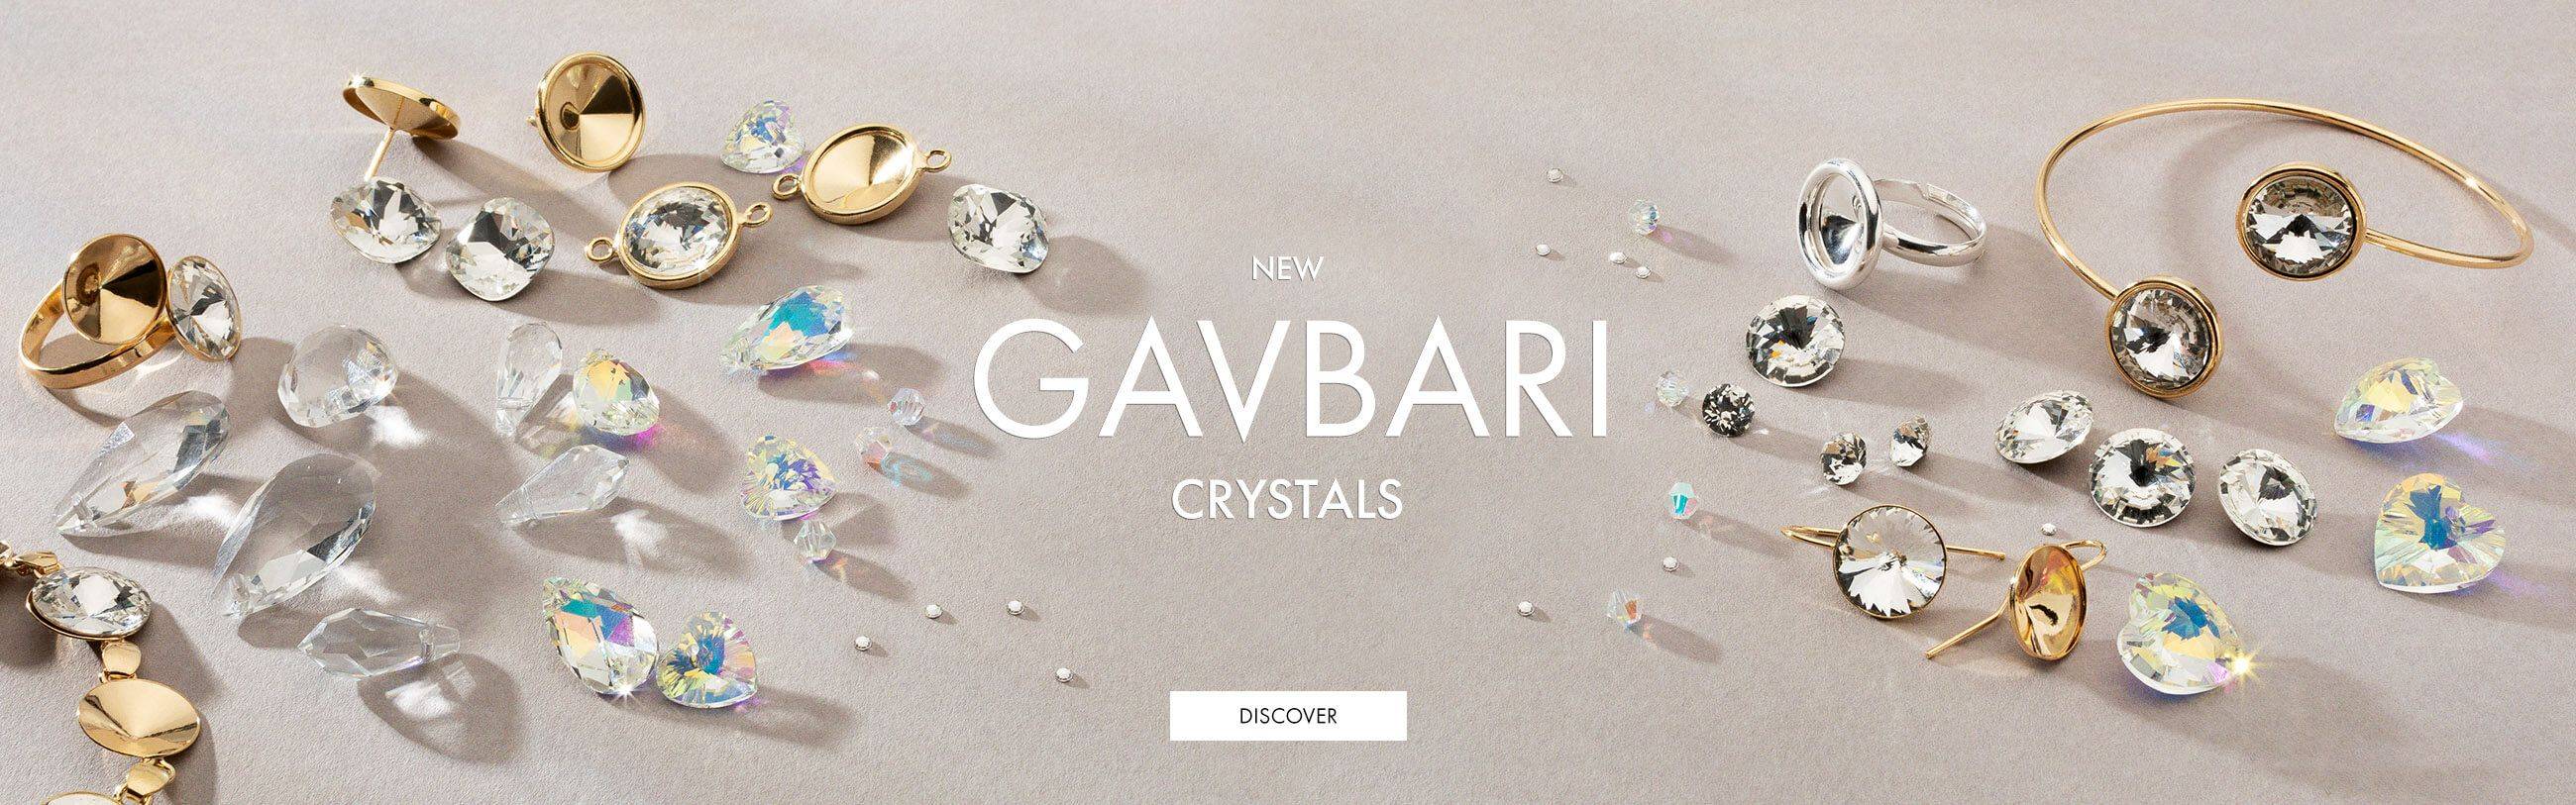 GAVBARI crystals